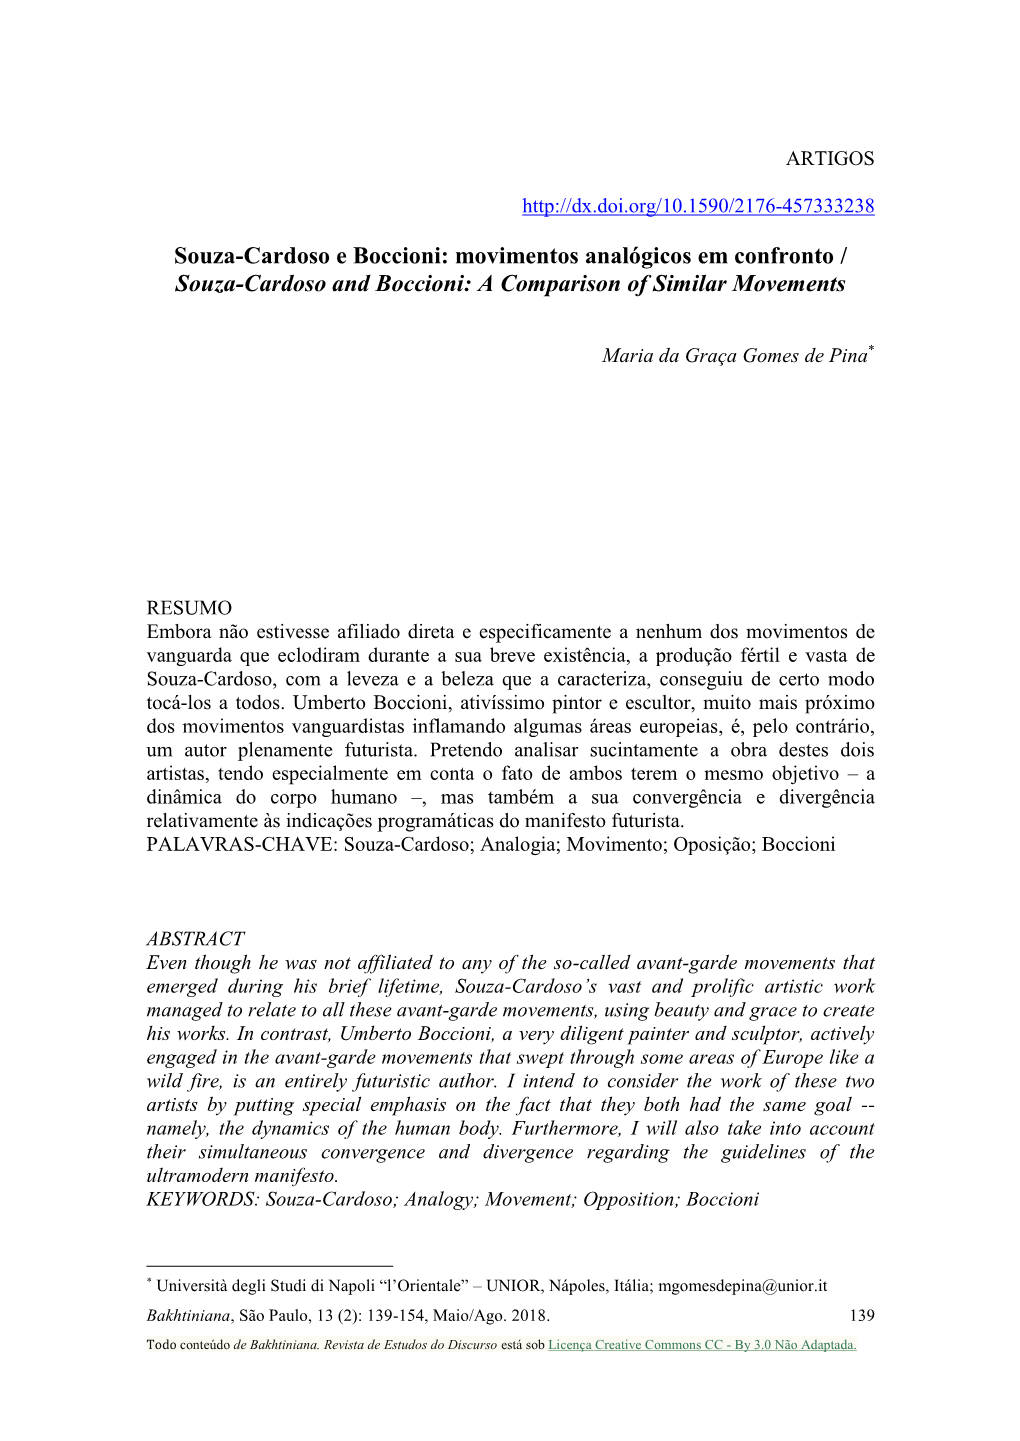 Souza-Cardoso and Boccioni: a Comparison of Similar Movements